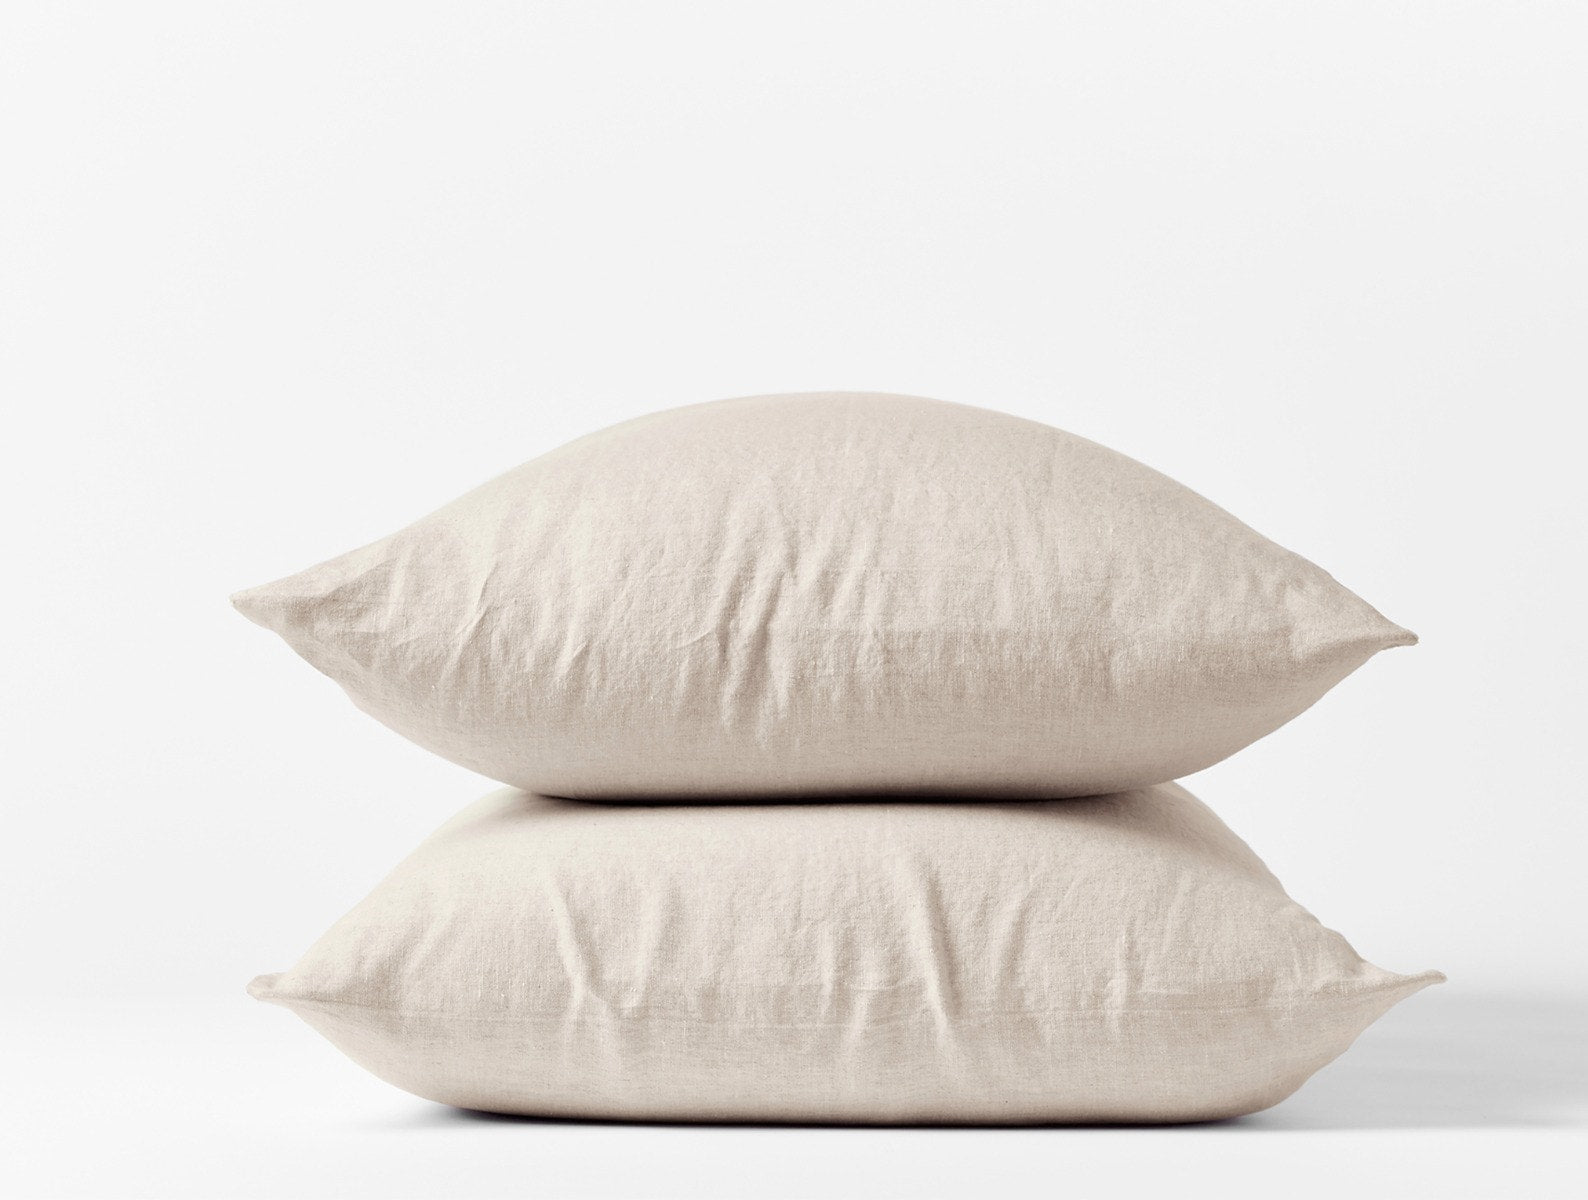 Linen Pillow Looks